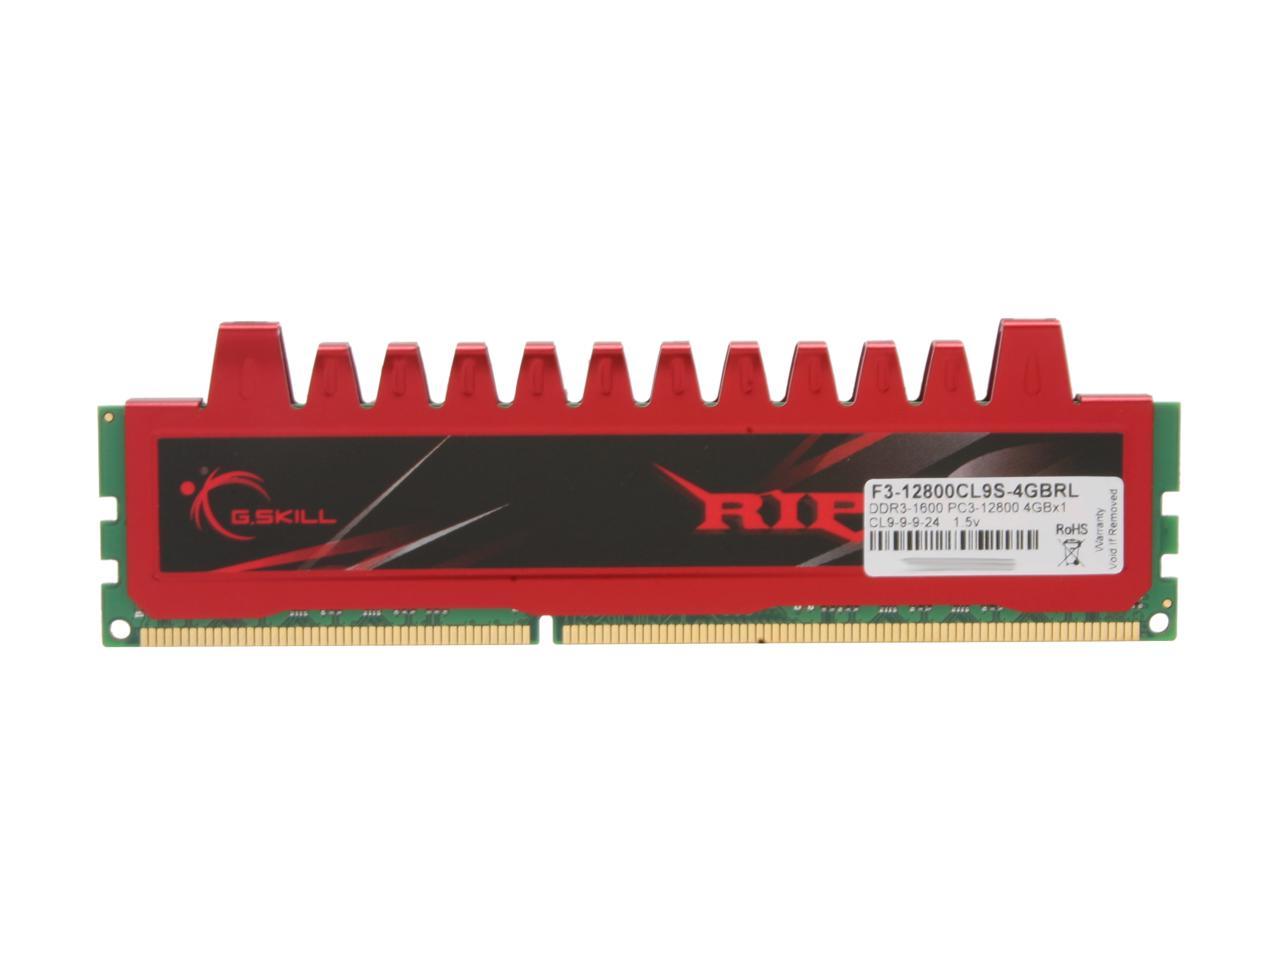 G.SKILL Ripjaws Series 4GB 240-Pin PC RAM DDR3 1600 (PC3 12800) Desktop  Memory Model F3-12800CL9S-4GBRL